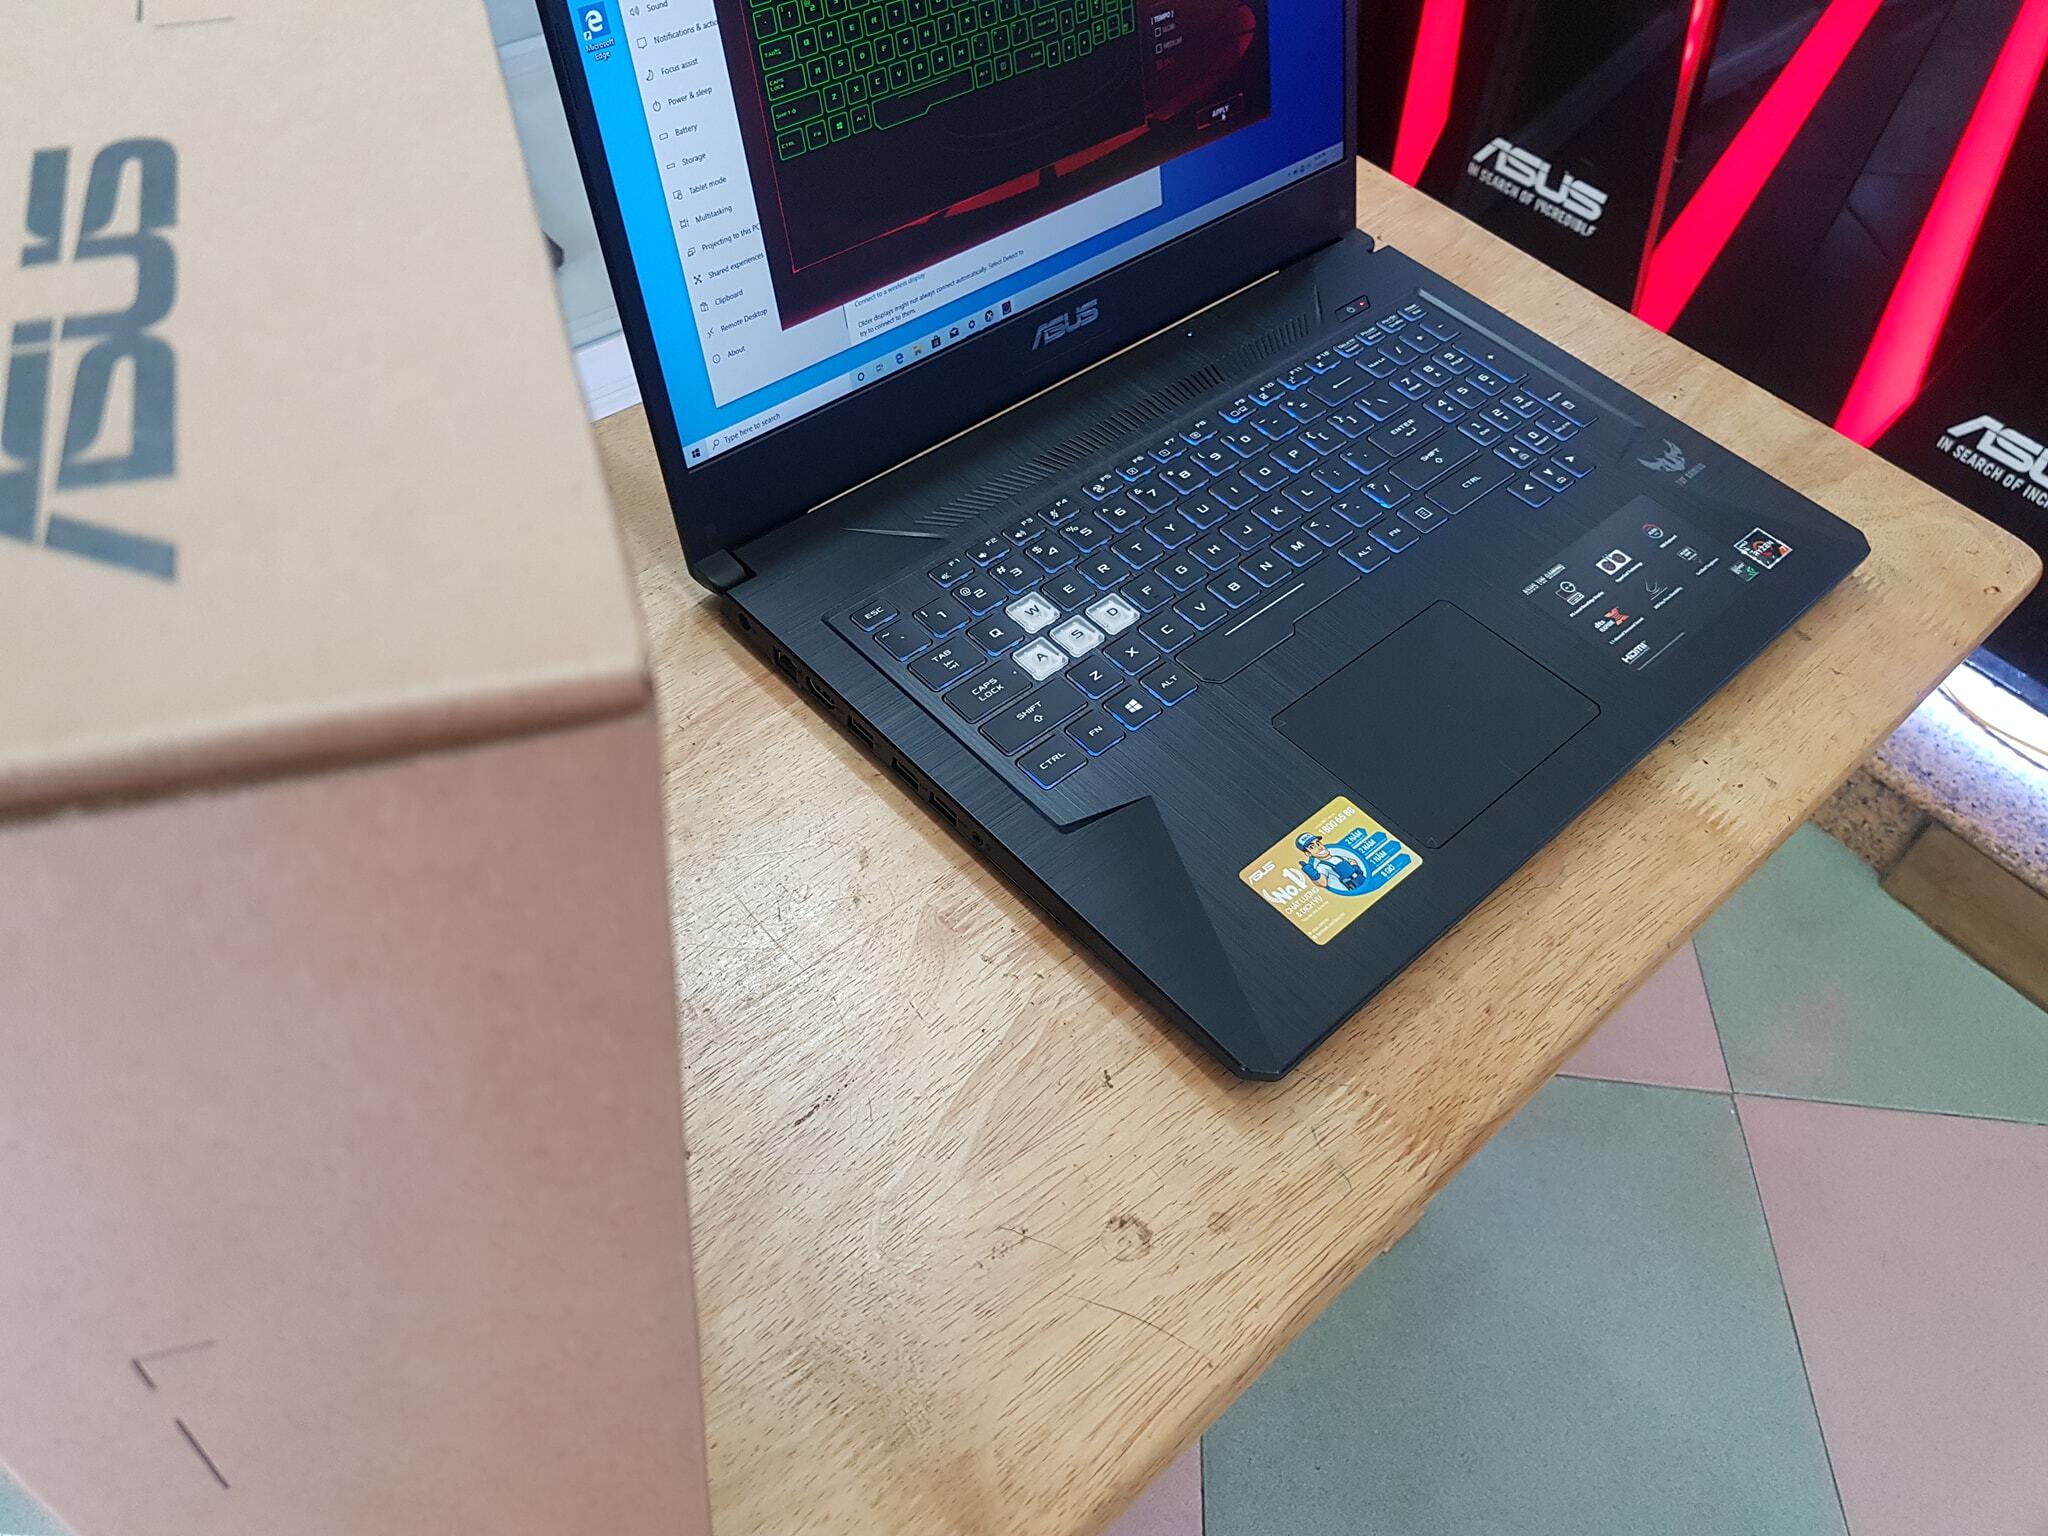 Laptop Asus TUF Gaming FX705DT-AU017T - AMD Ryzen 7 3750H, 8GB RAM, SSD 512GB, Nvidia GeForce GTX 1650 4GB GDDR5, 17.3 inch